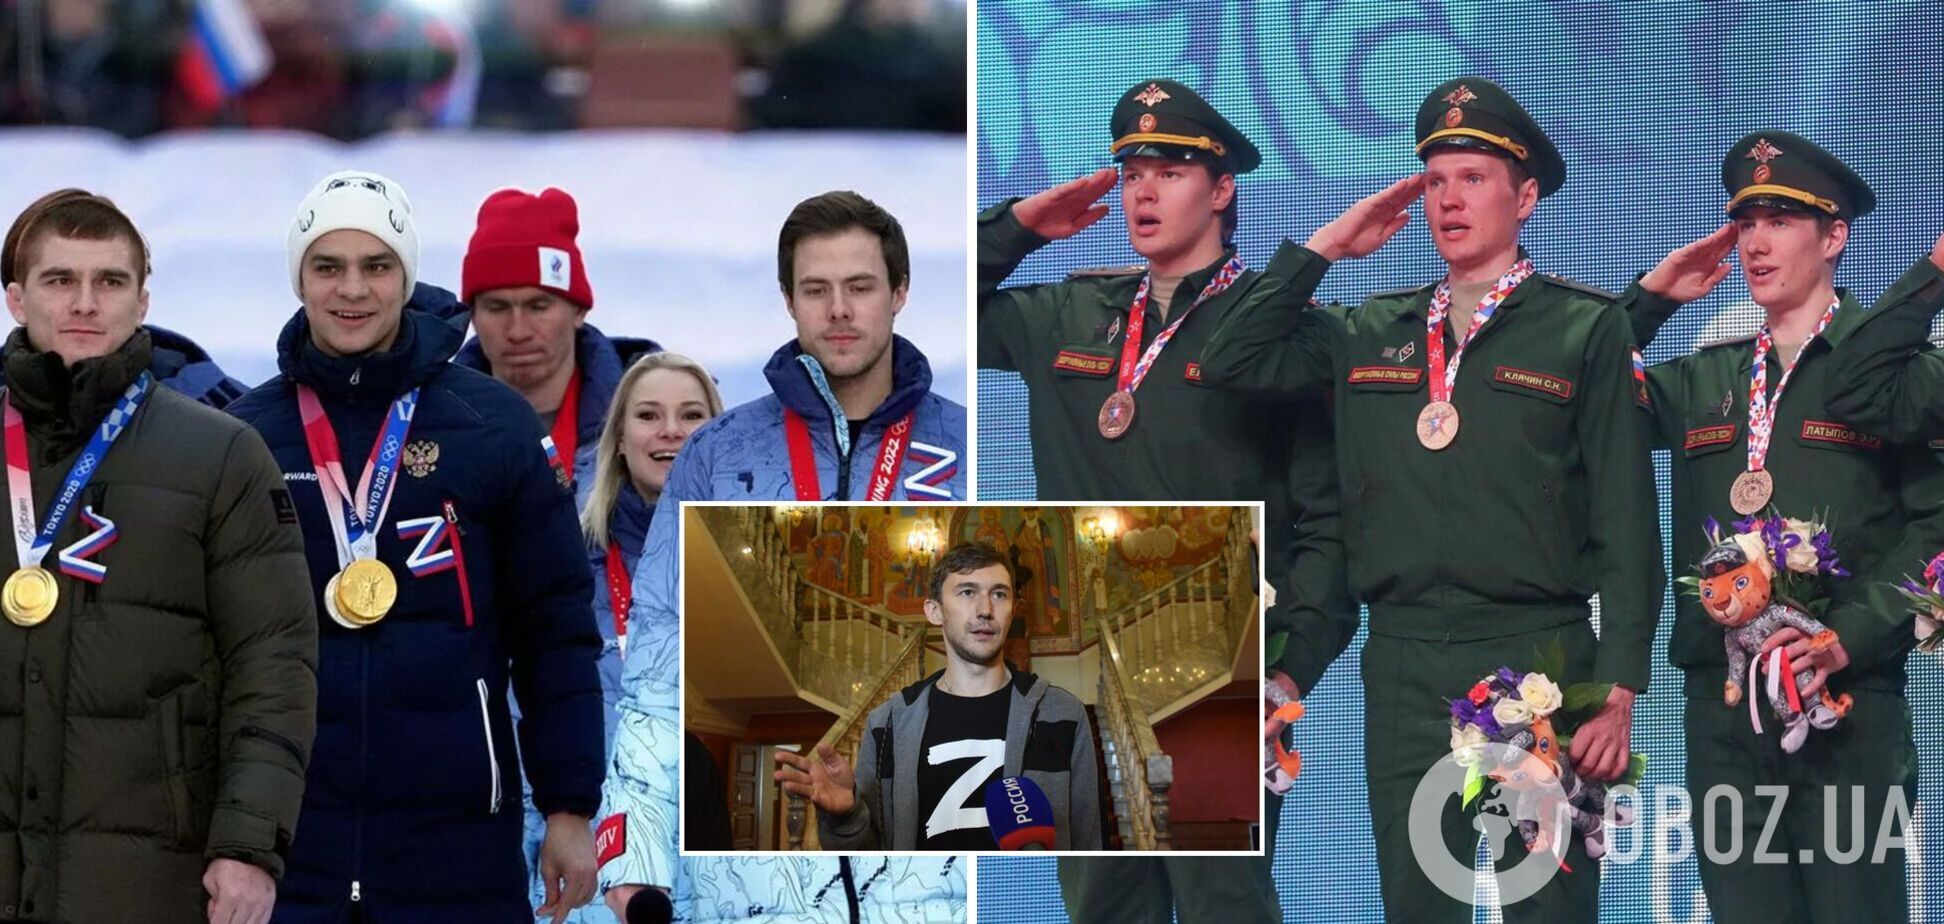 Спортроты, военные звания: в Госдуме заявили, что спортсмены попадут под мобилизацию